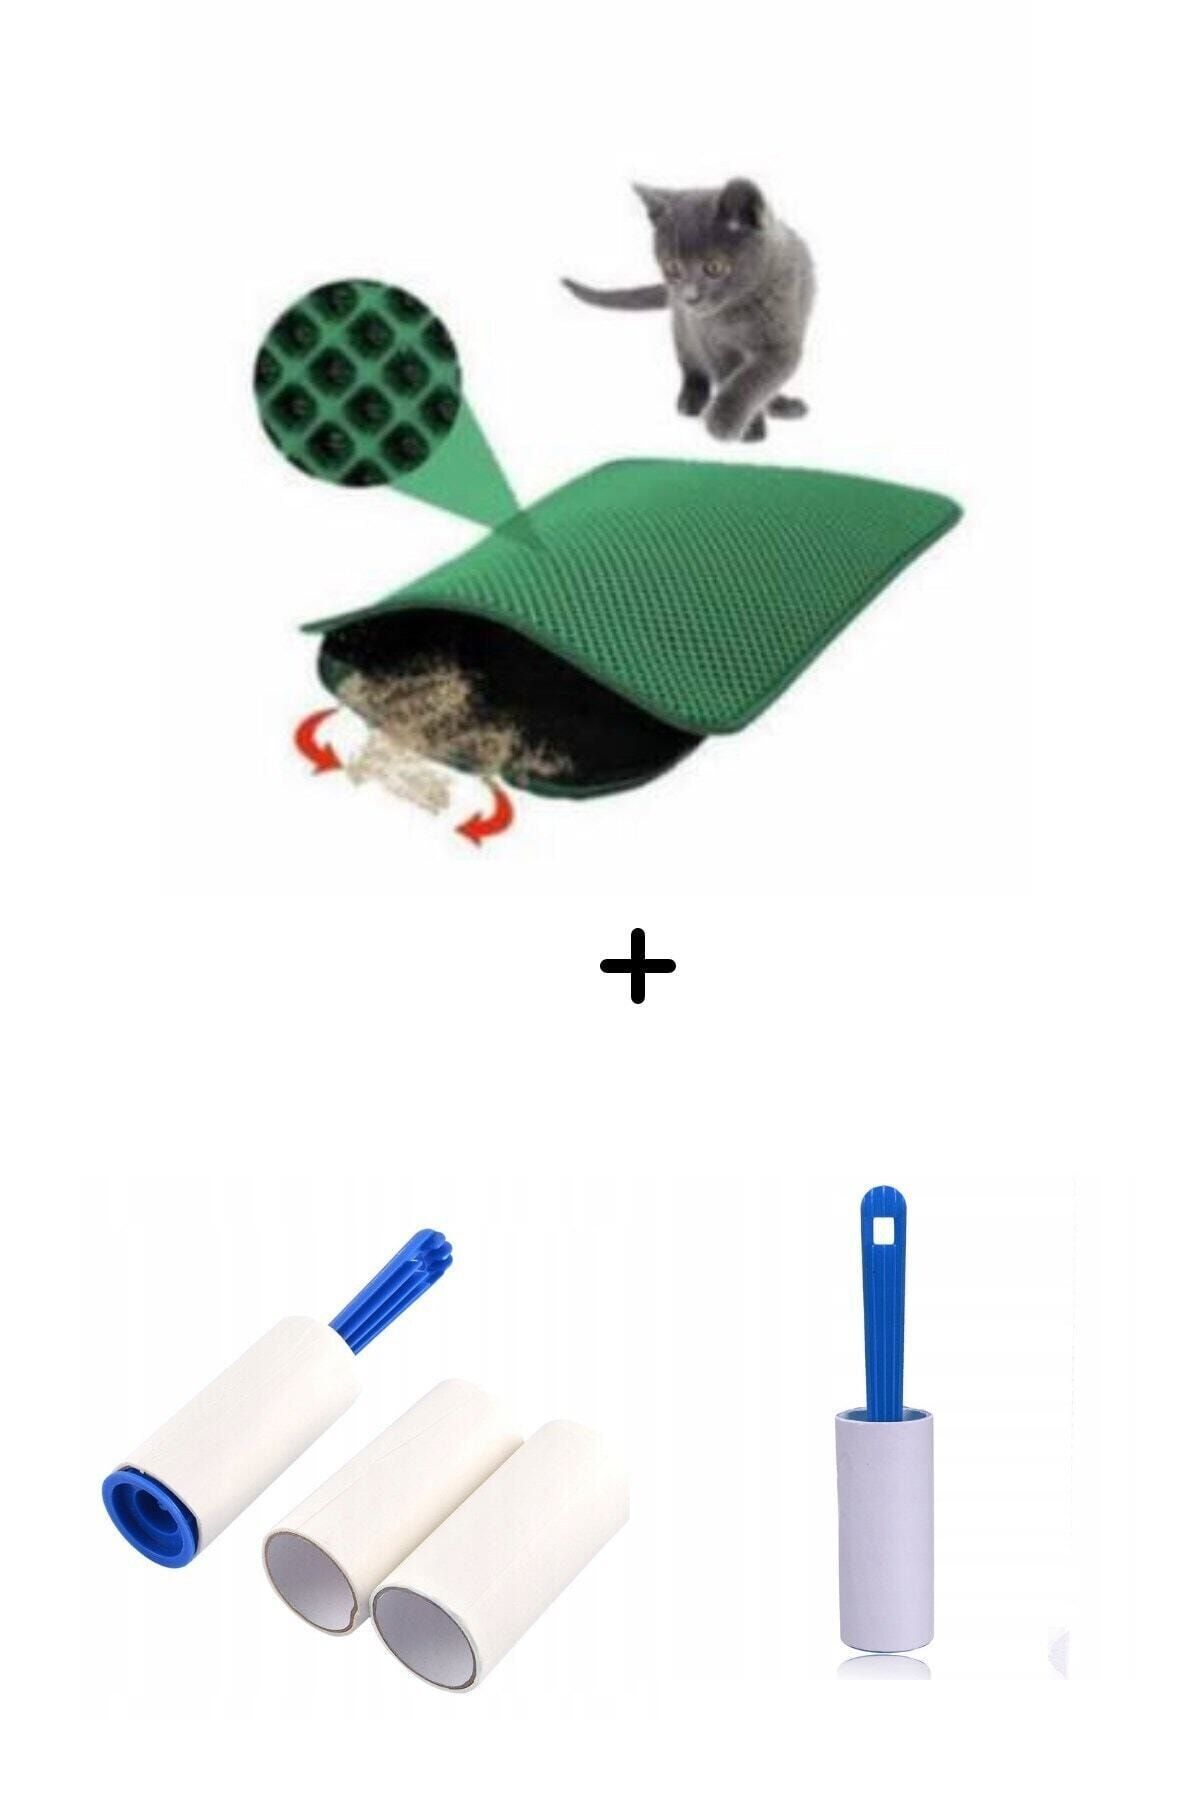 Buffer Tuvalet Önü Kum Toplayıcı Yeşil Elekli Kedi Paspası Ve Tüy Toplama Rulo Aparat